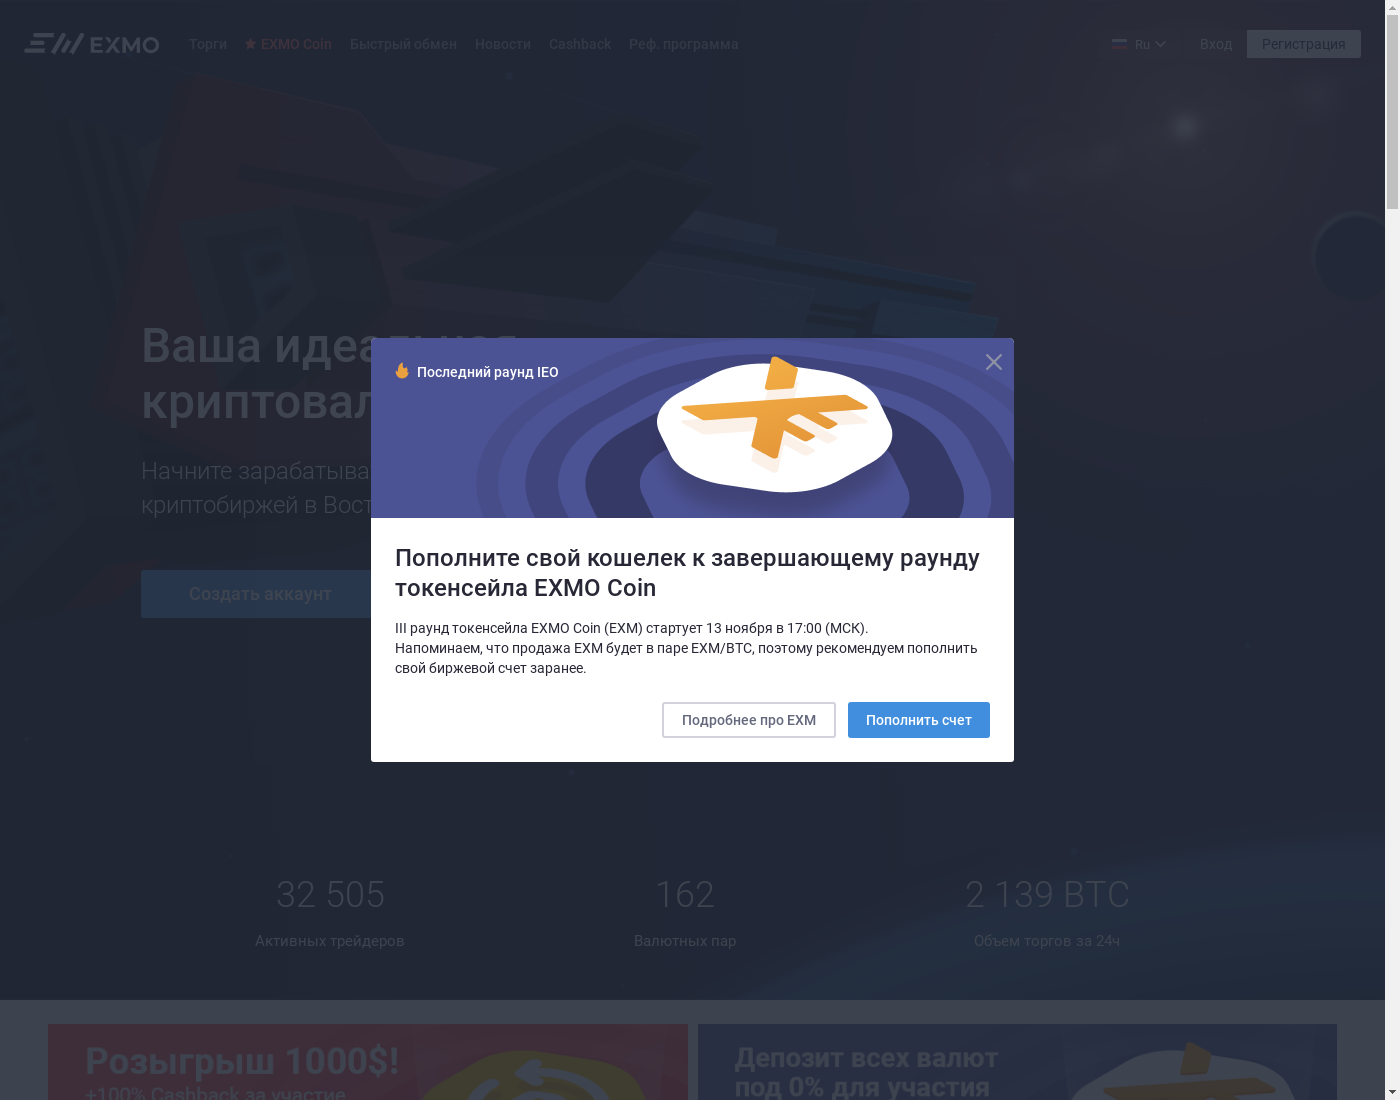 EXMO вебсайт. Домашняя страница, язык интерфейса — Русский